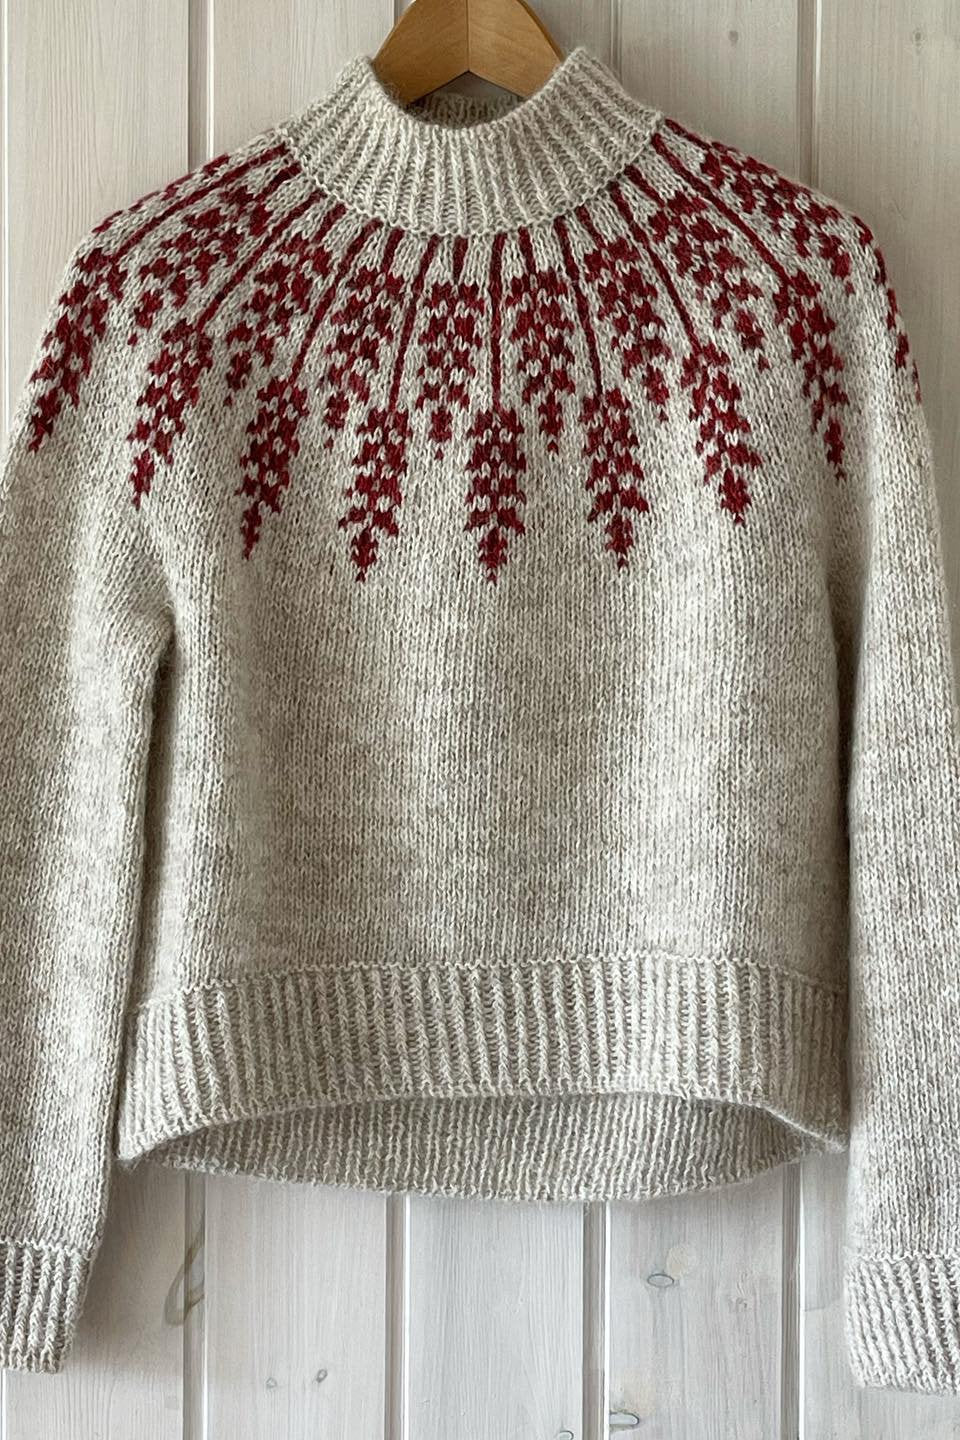 Strikkeopskrift til Lupin Sweater fra Hanne Rimmen x Isager Botanica kollektion